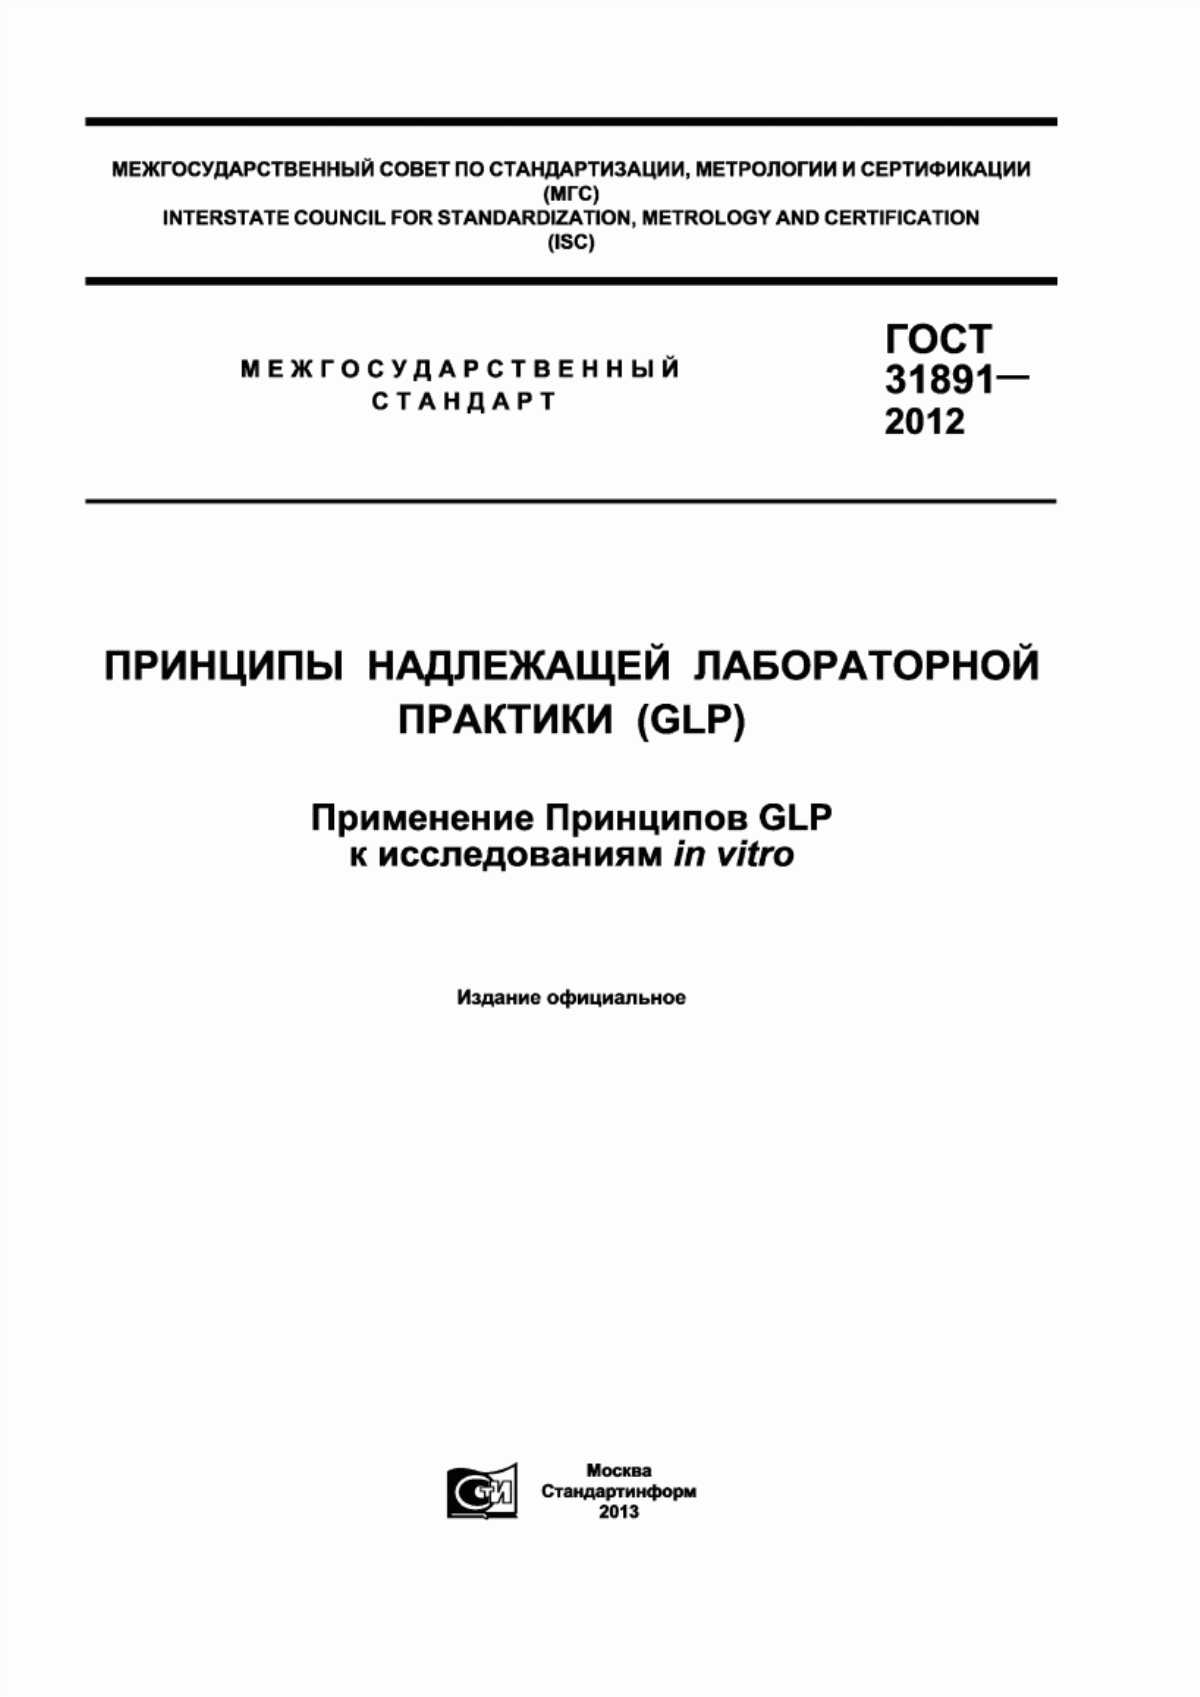 ГОСТ 31891-2012 Принципы надлежащей лабораторной практики (GLP). Применение принципов GLP к исследованиям in vitro